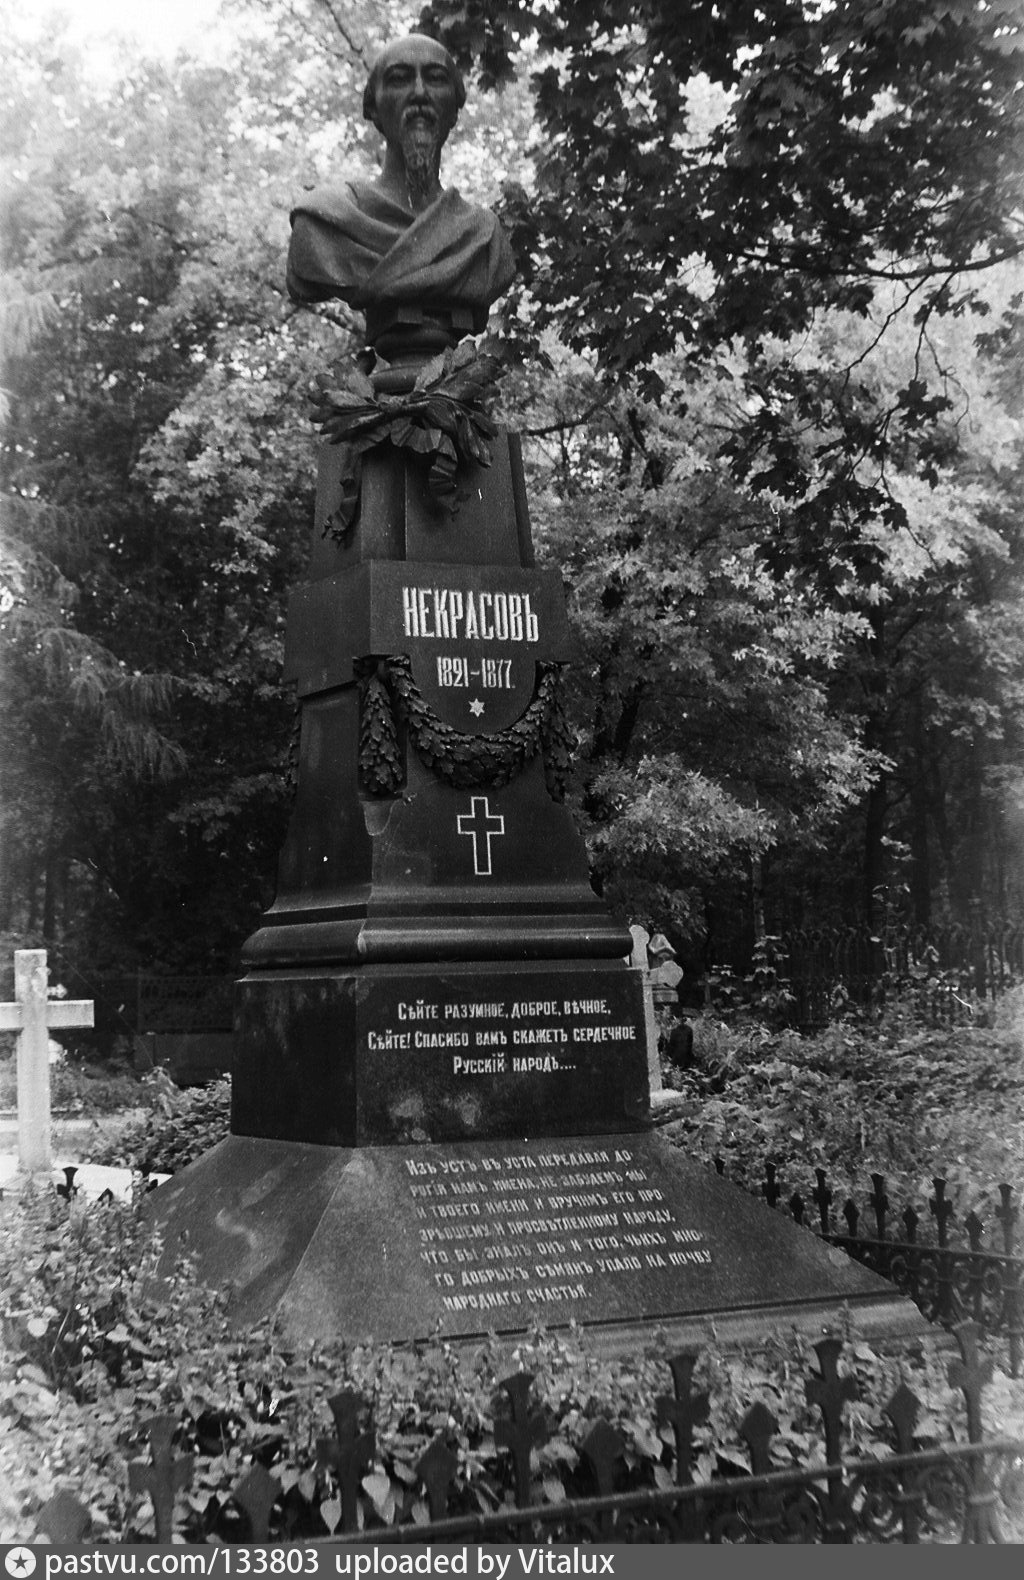 Новодевичье кладбище в Петербурге надгробие Некрасова